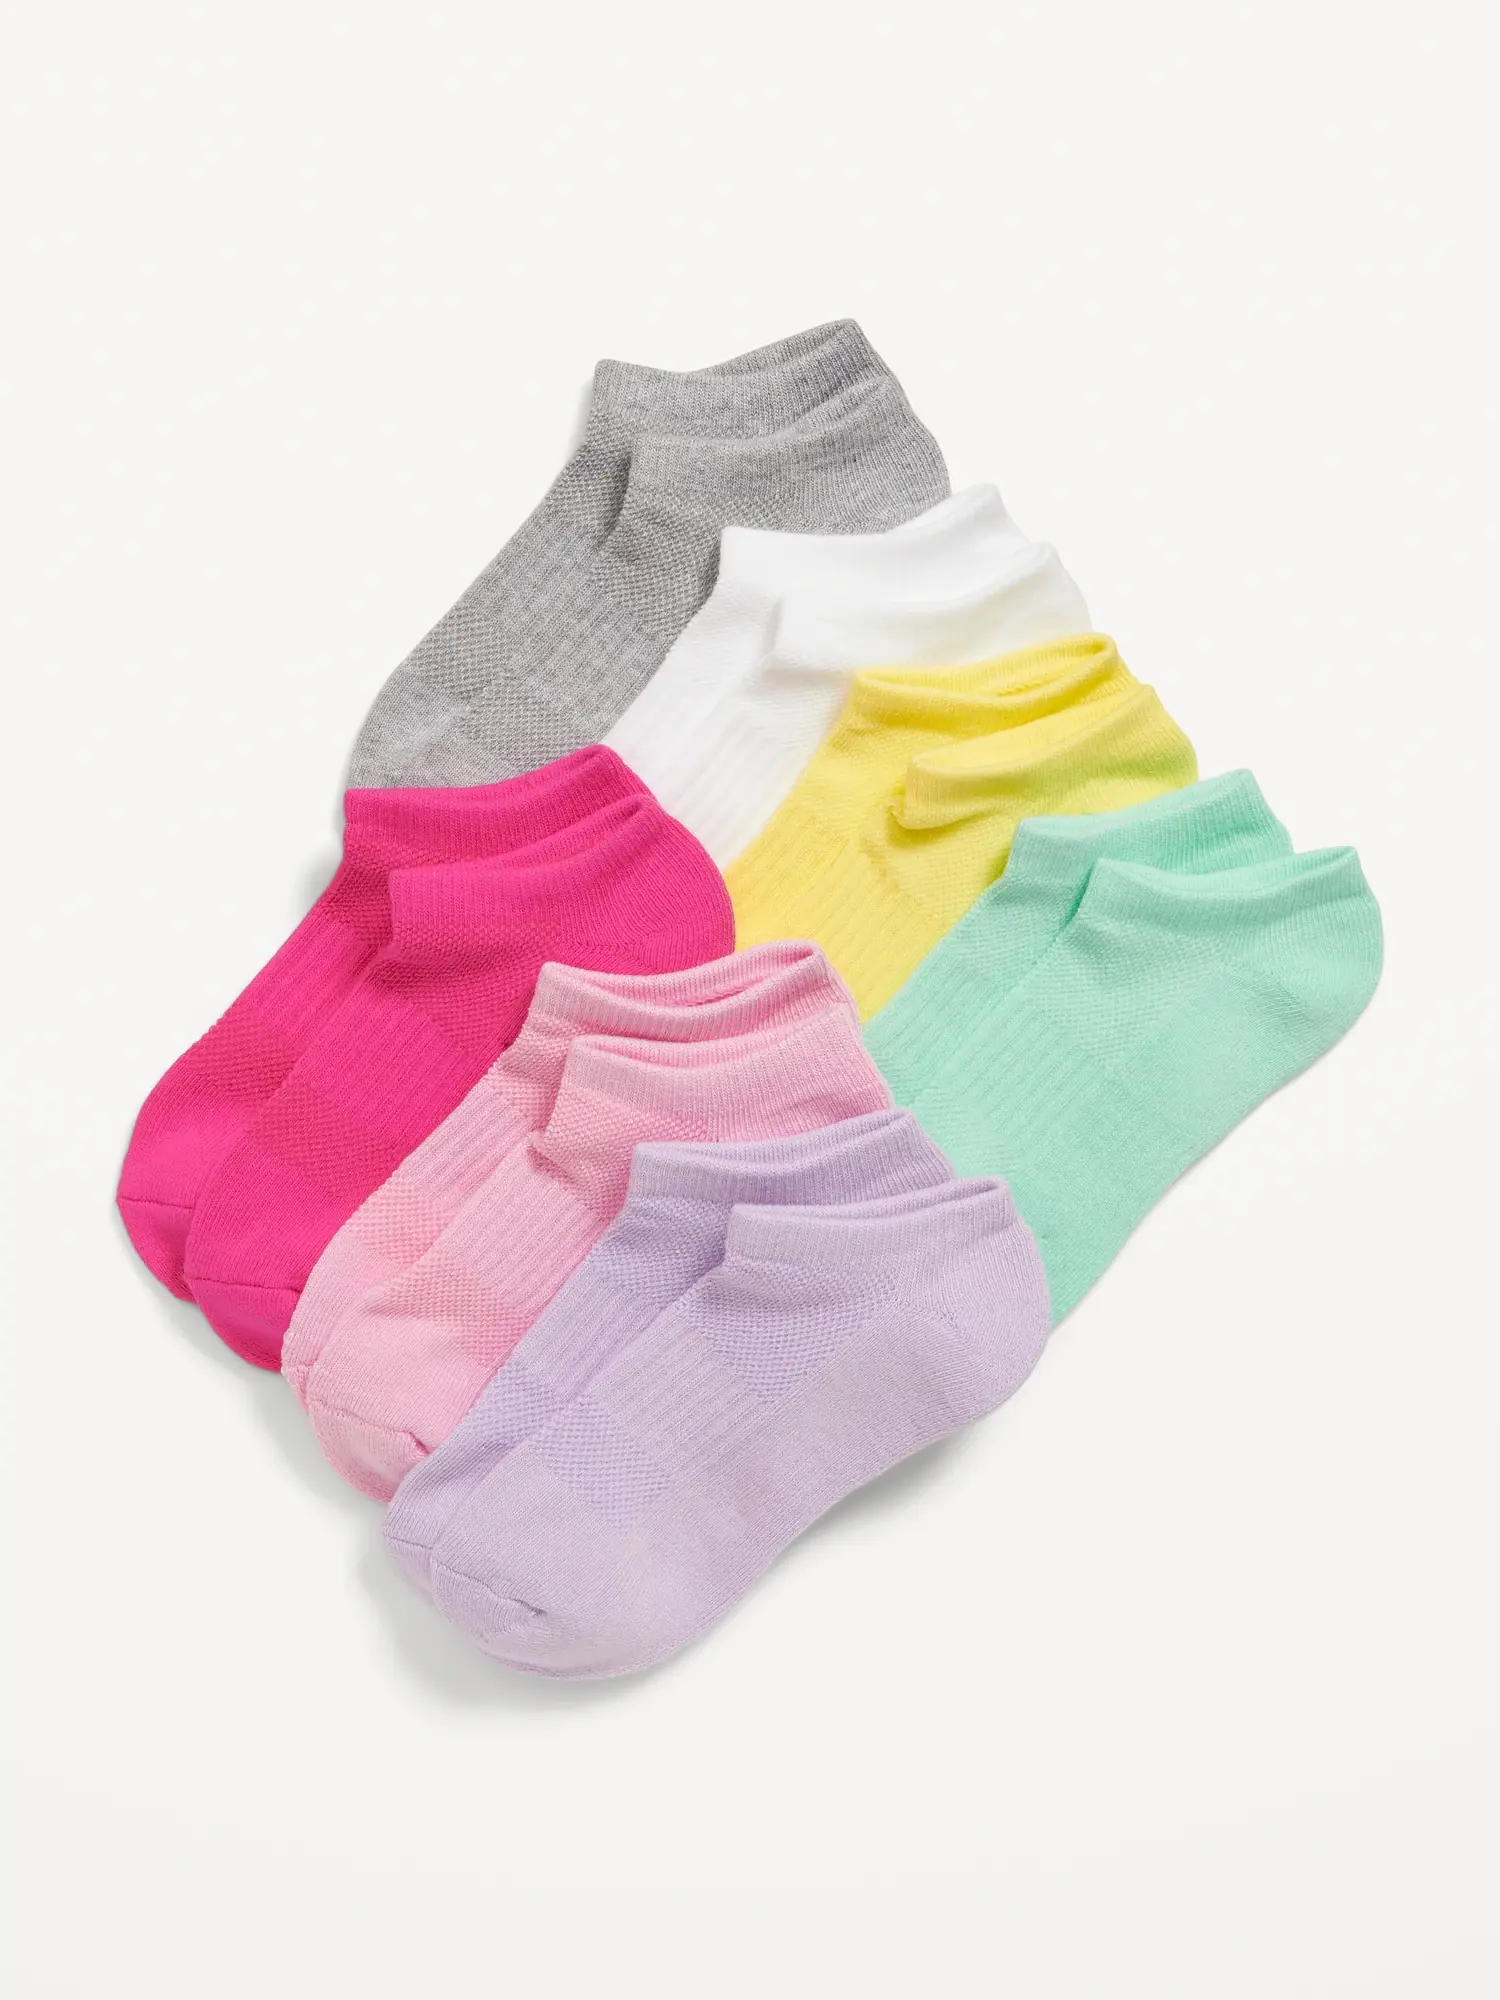 Old Navy Ankle Socks 7-Pack for Girls multi. 1